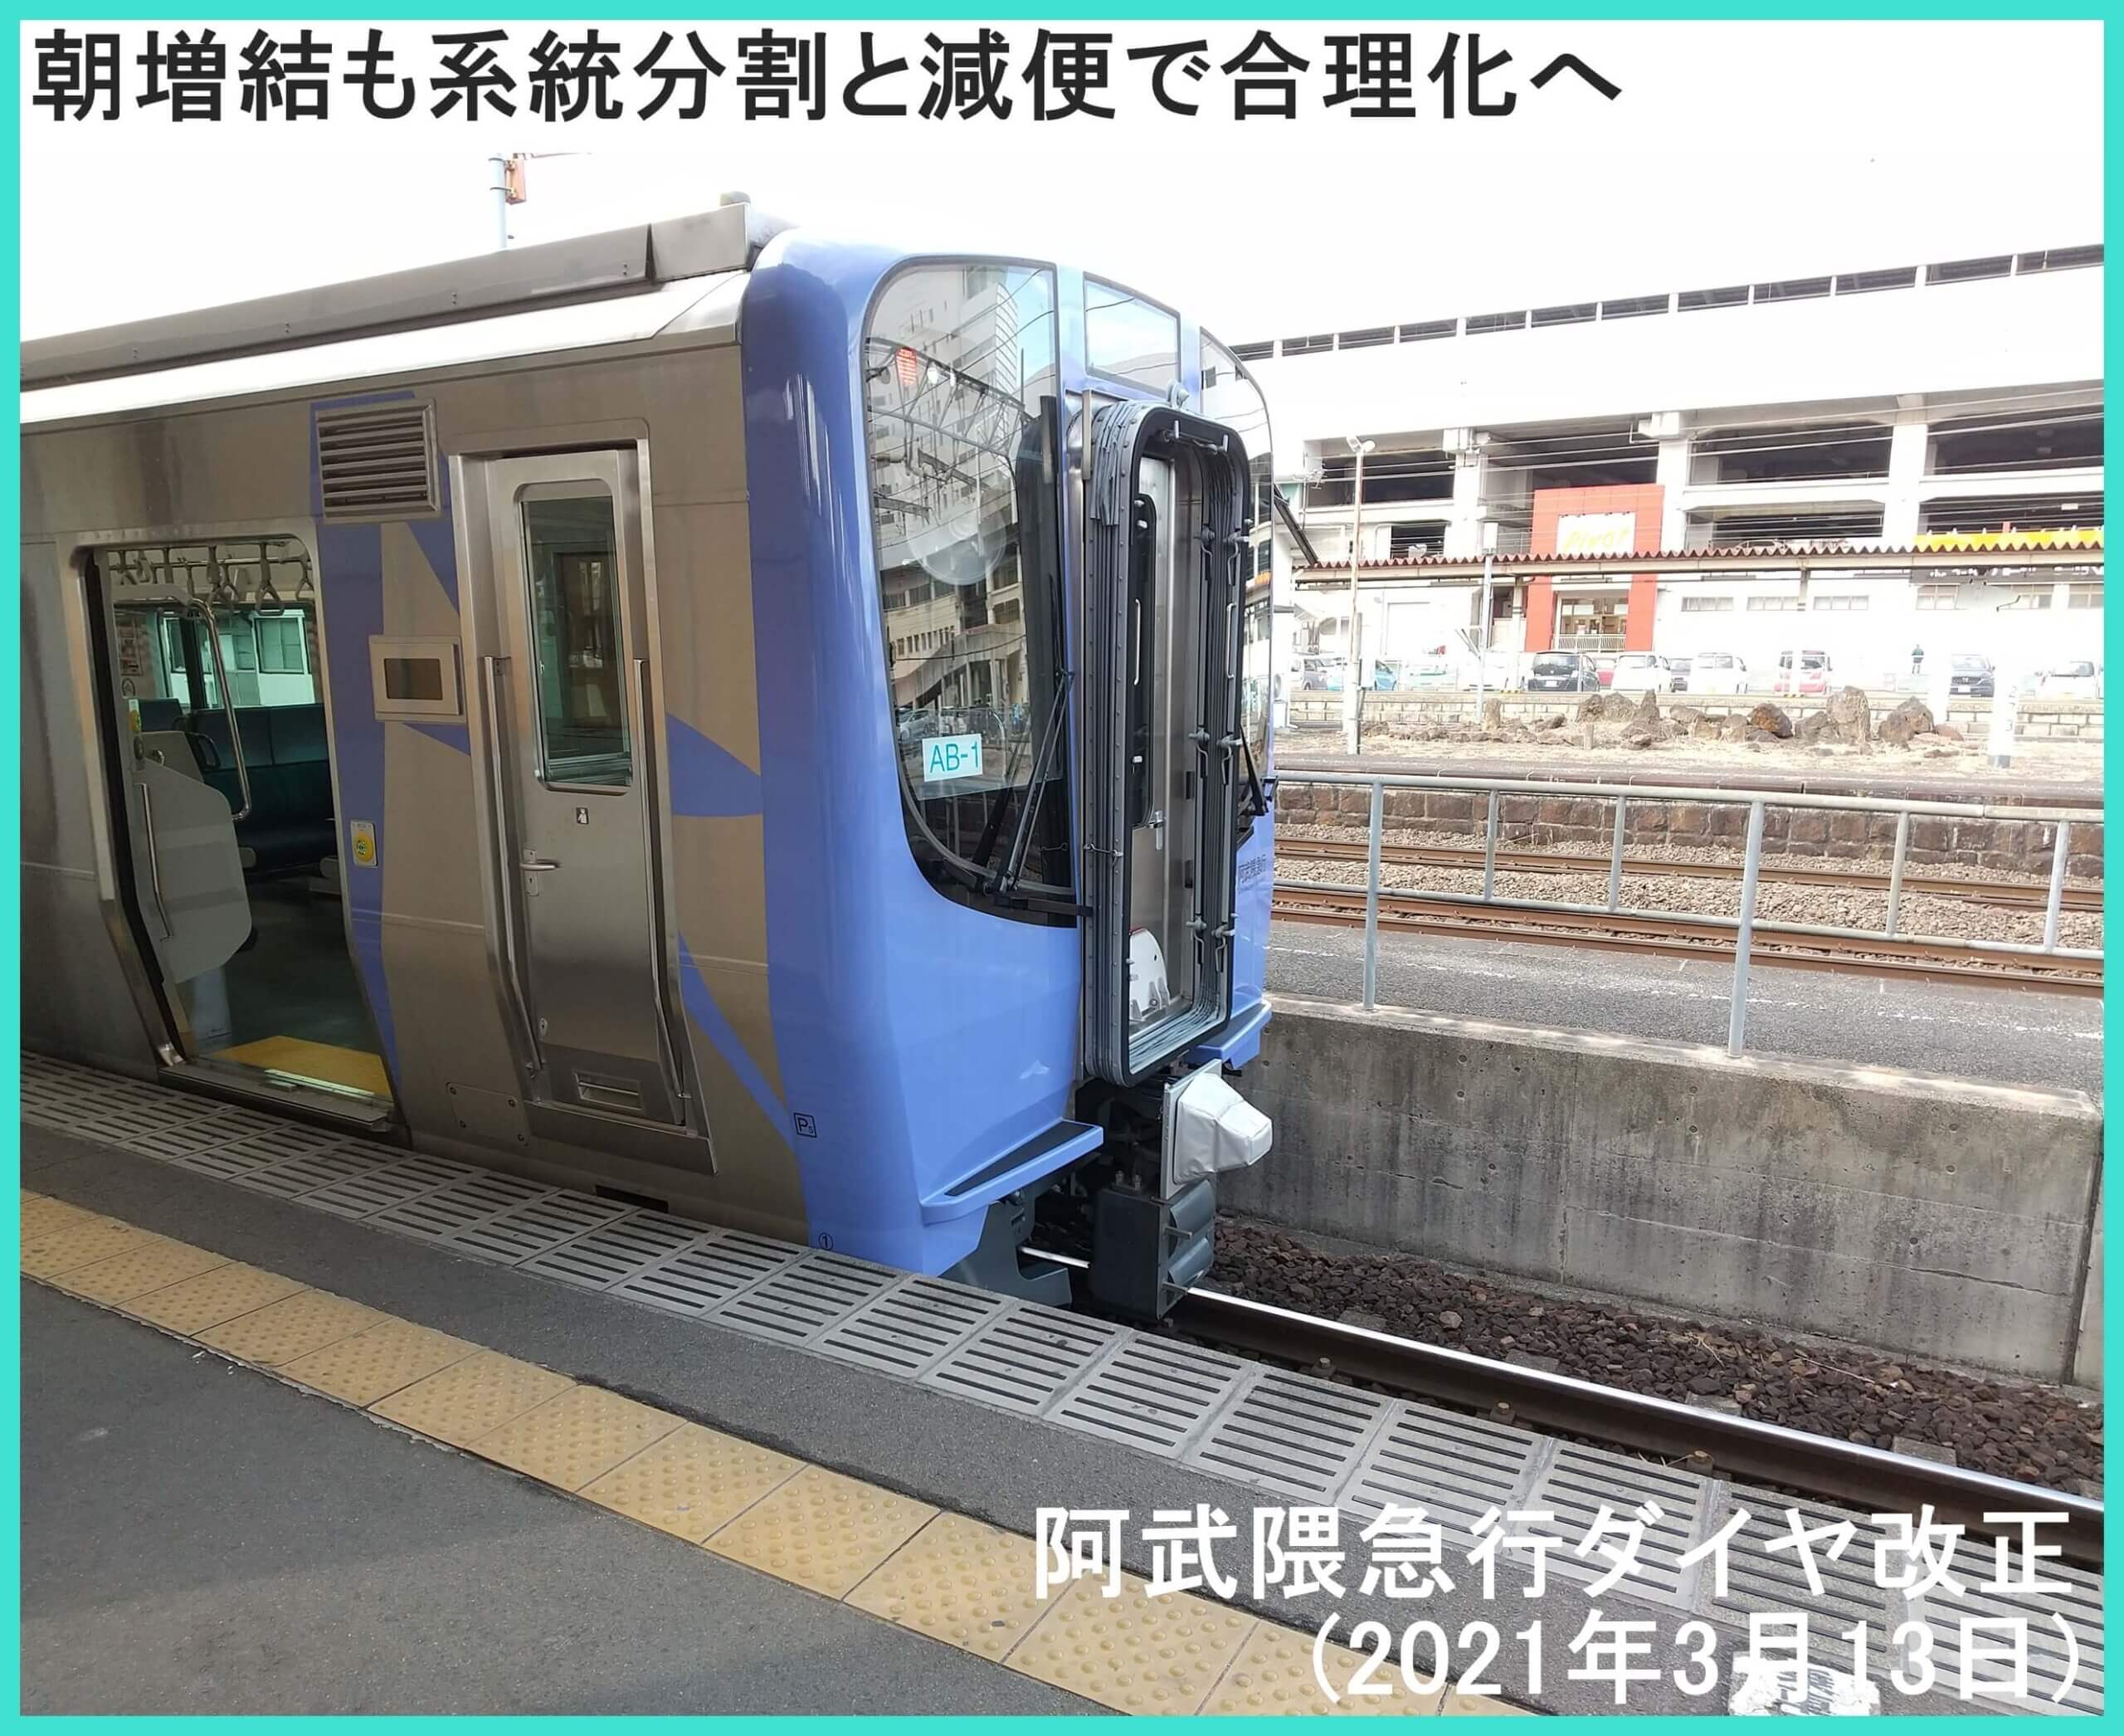 朝増結も系統分割と減便で合理化へ　阿武隈急行ダイヤ改正(2021年3月13日)